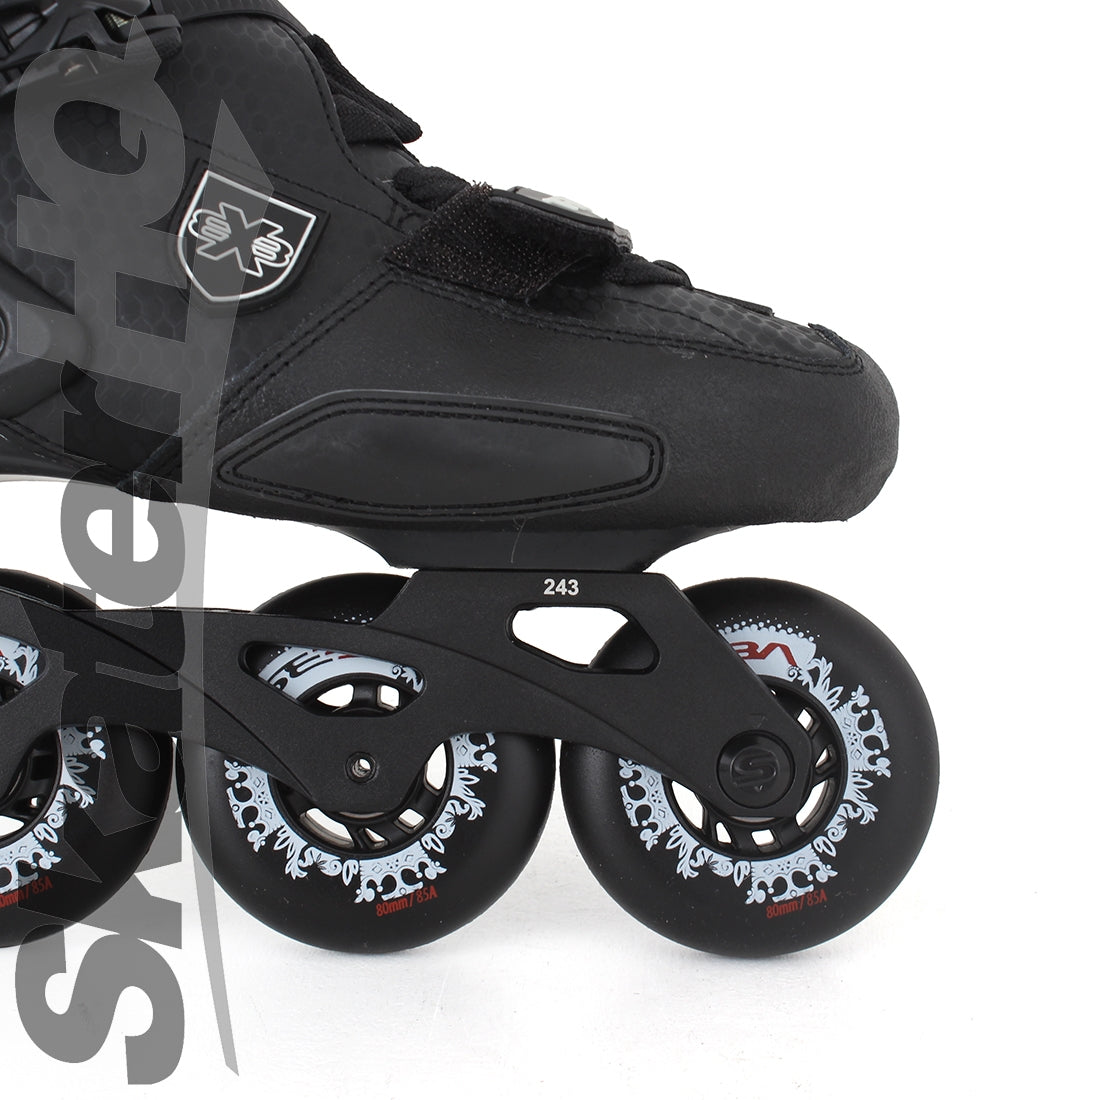 Seba Trix 2 16 80 Black 10US/EU43 Inline Rec Skates